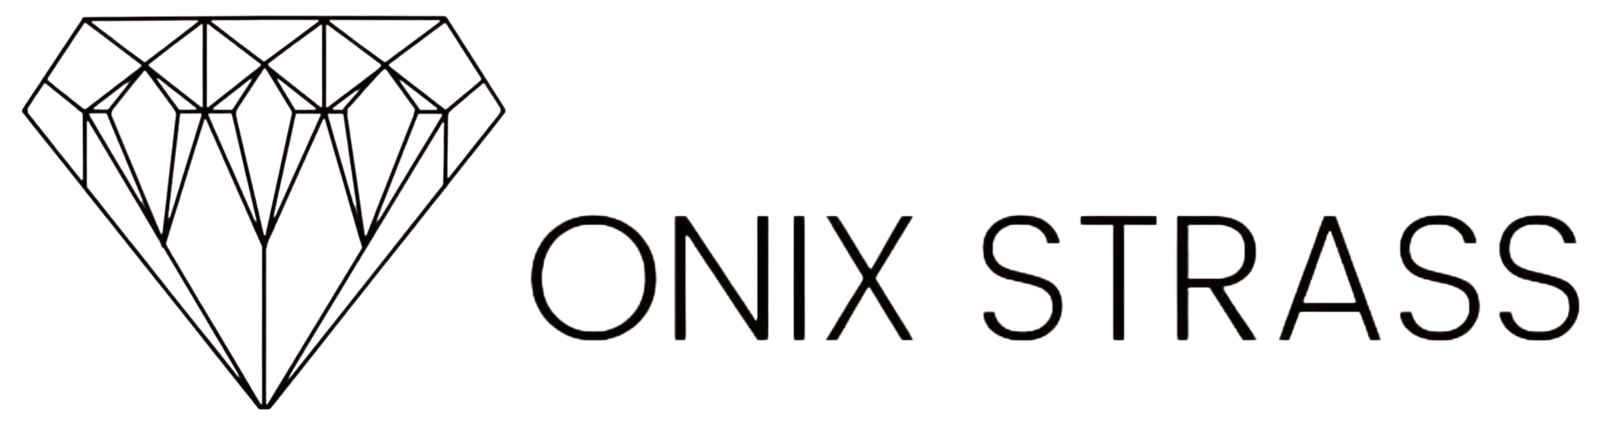 Onix Strass Enfeites Para Calçados - É promoção que fala?? SIMMMM